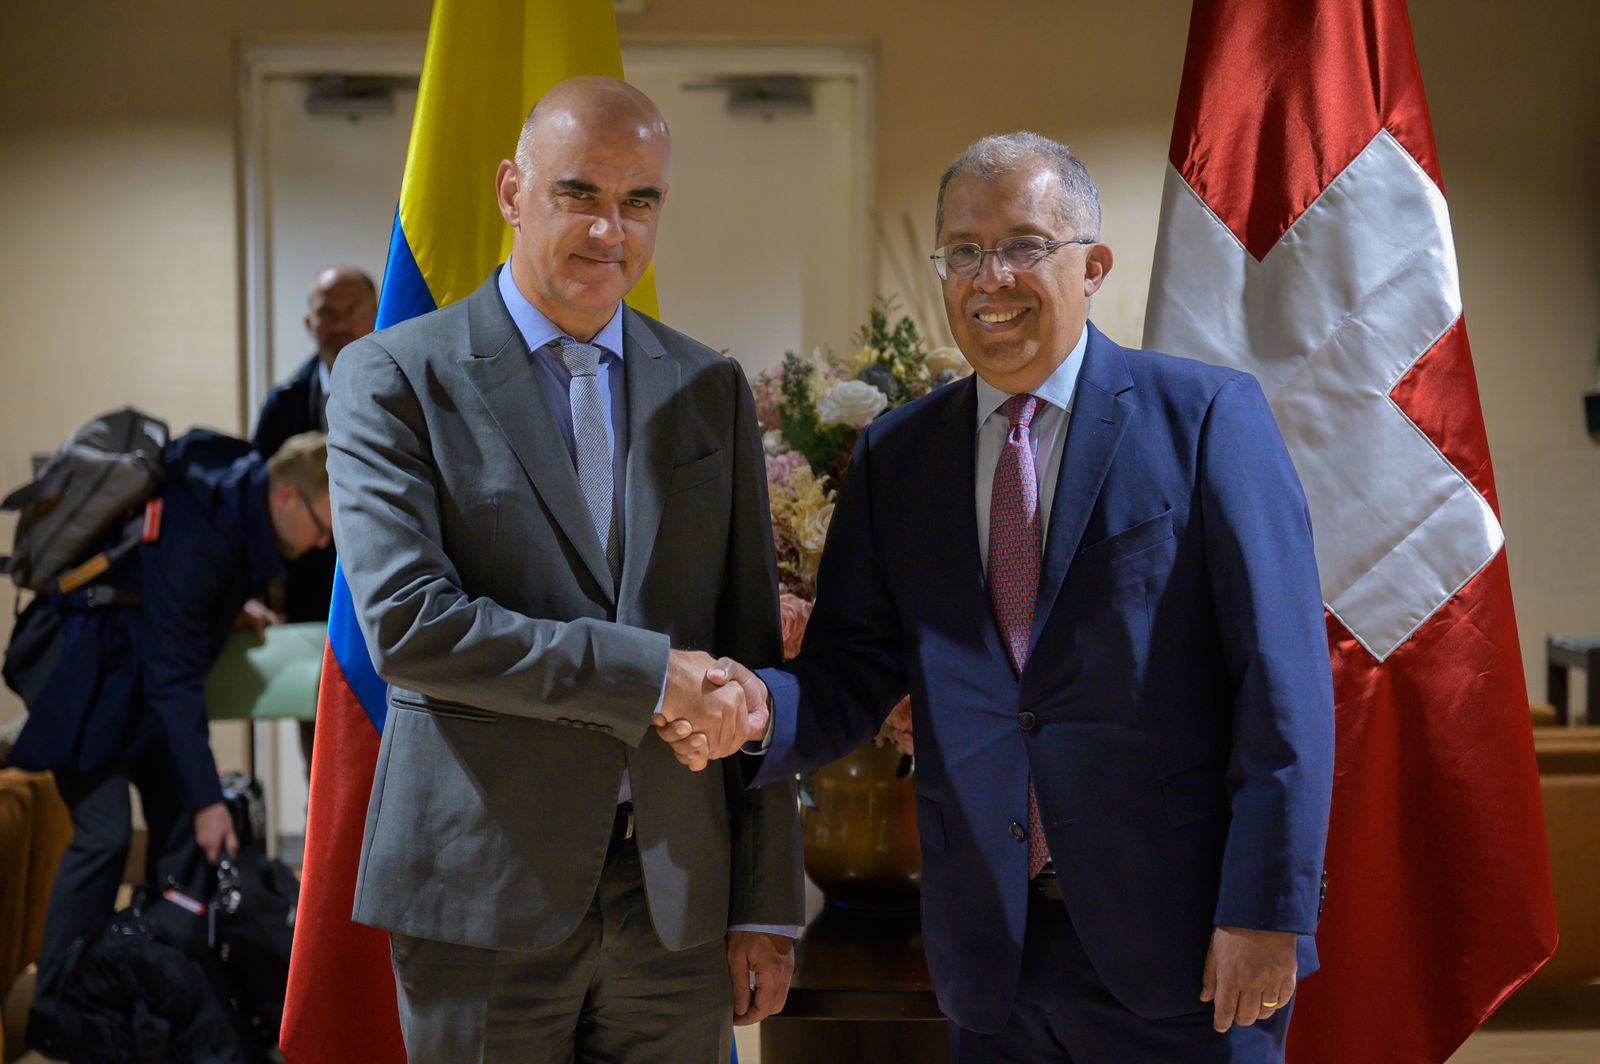 Presidentes de Colombia y Suiza sostendrán encuentro oficial en la Casa de Nariño